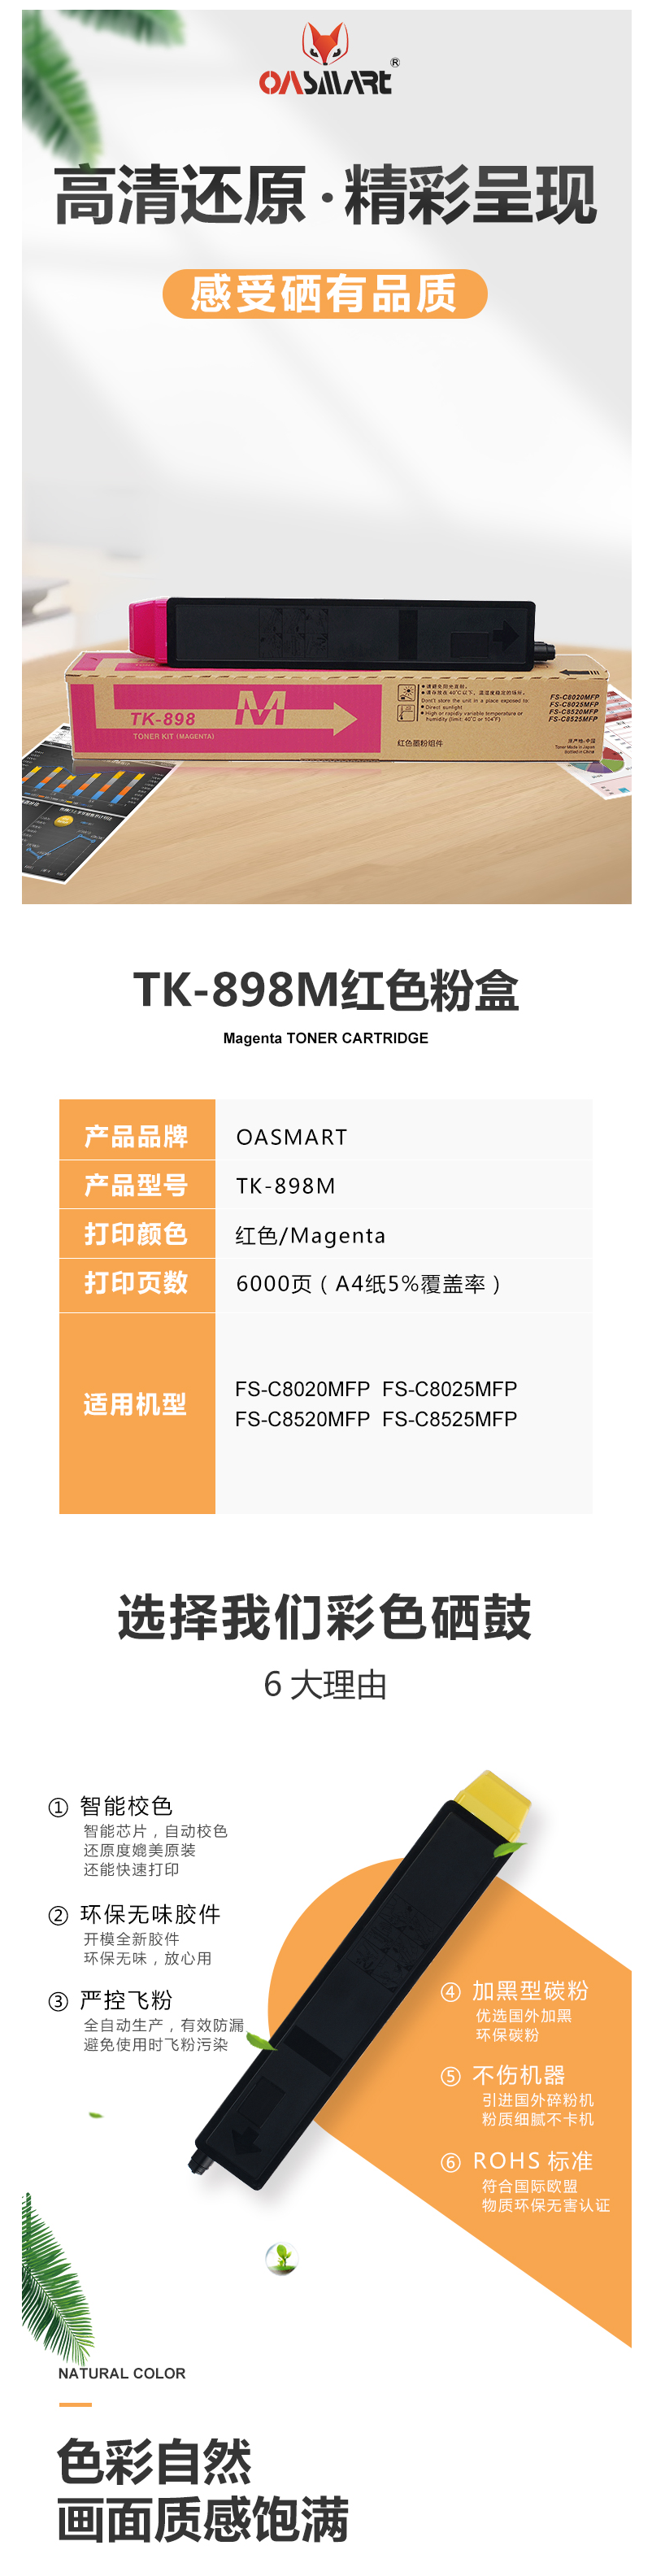 FireShot Capture 321 - 【OASMARTTK-898M】OASMART（欧司特）TK-898M _ - https___item.jd.com_100016360020.html.png